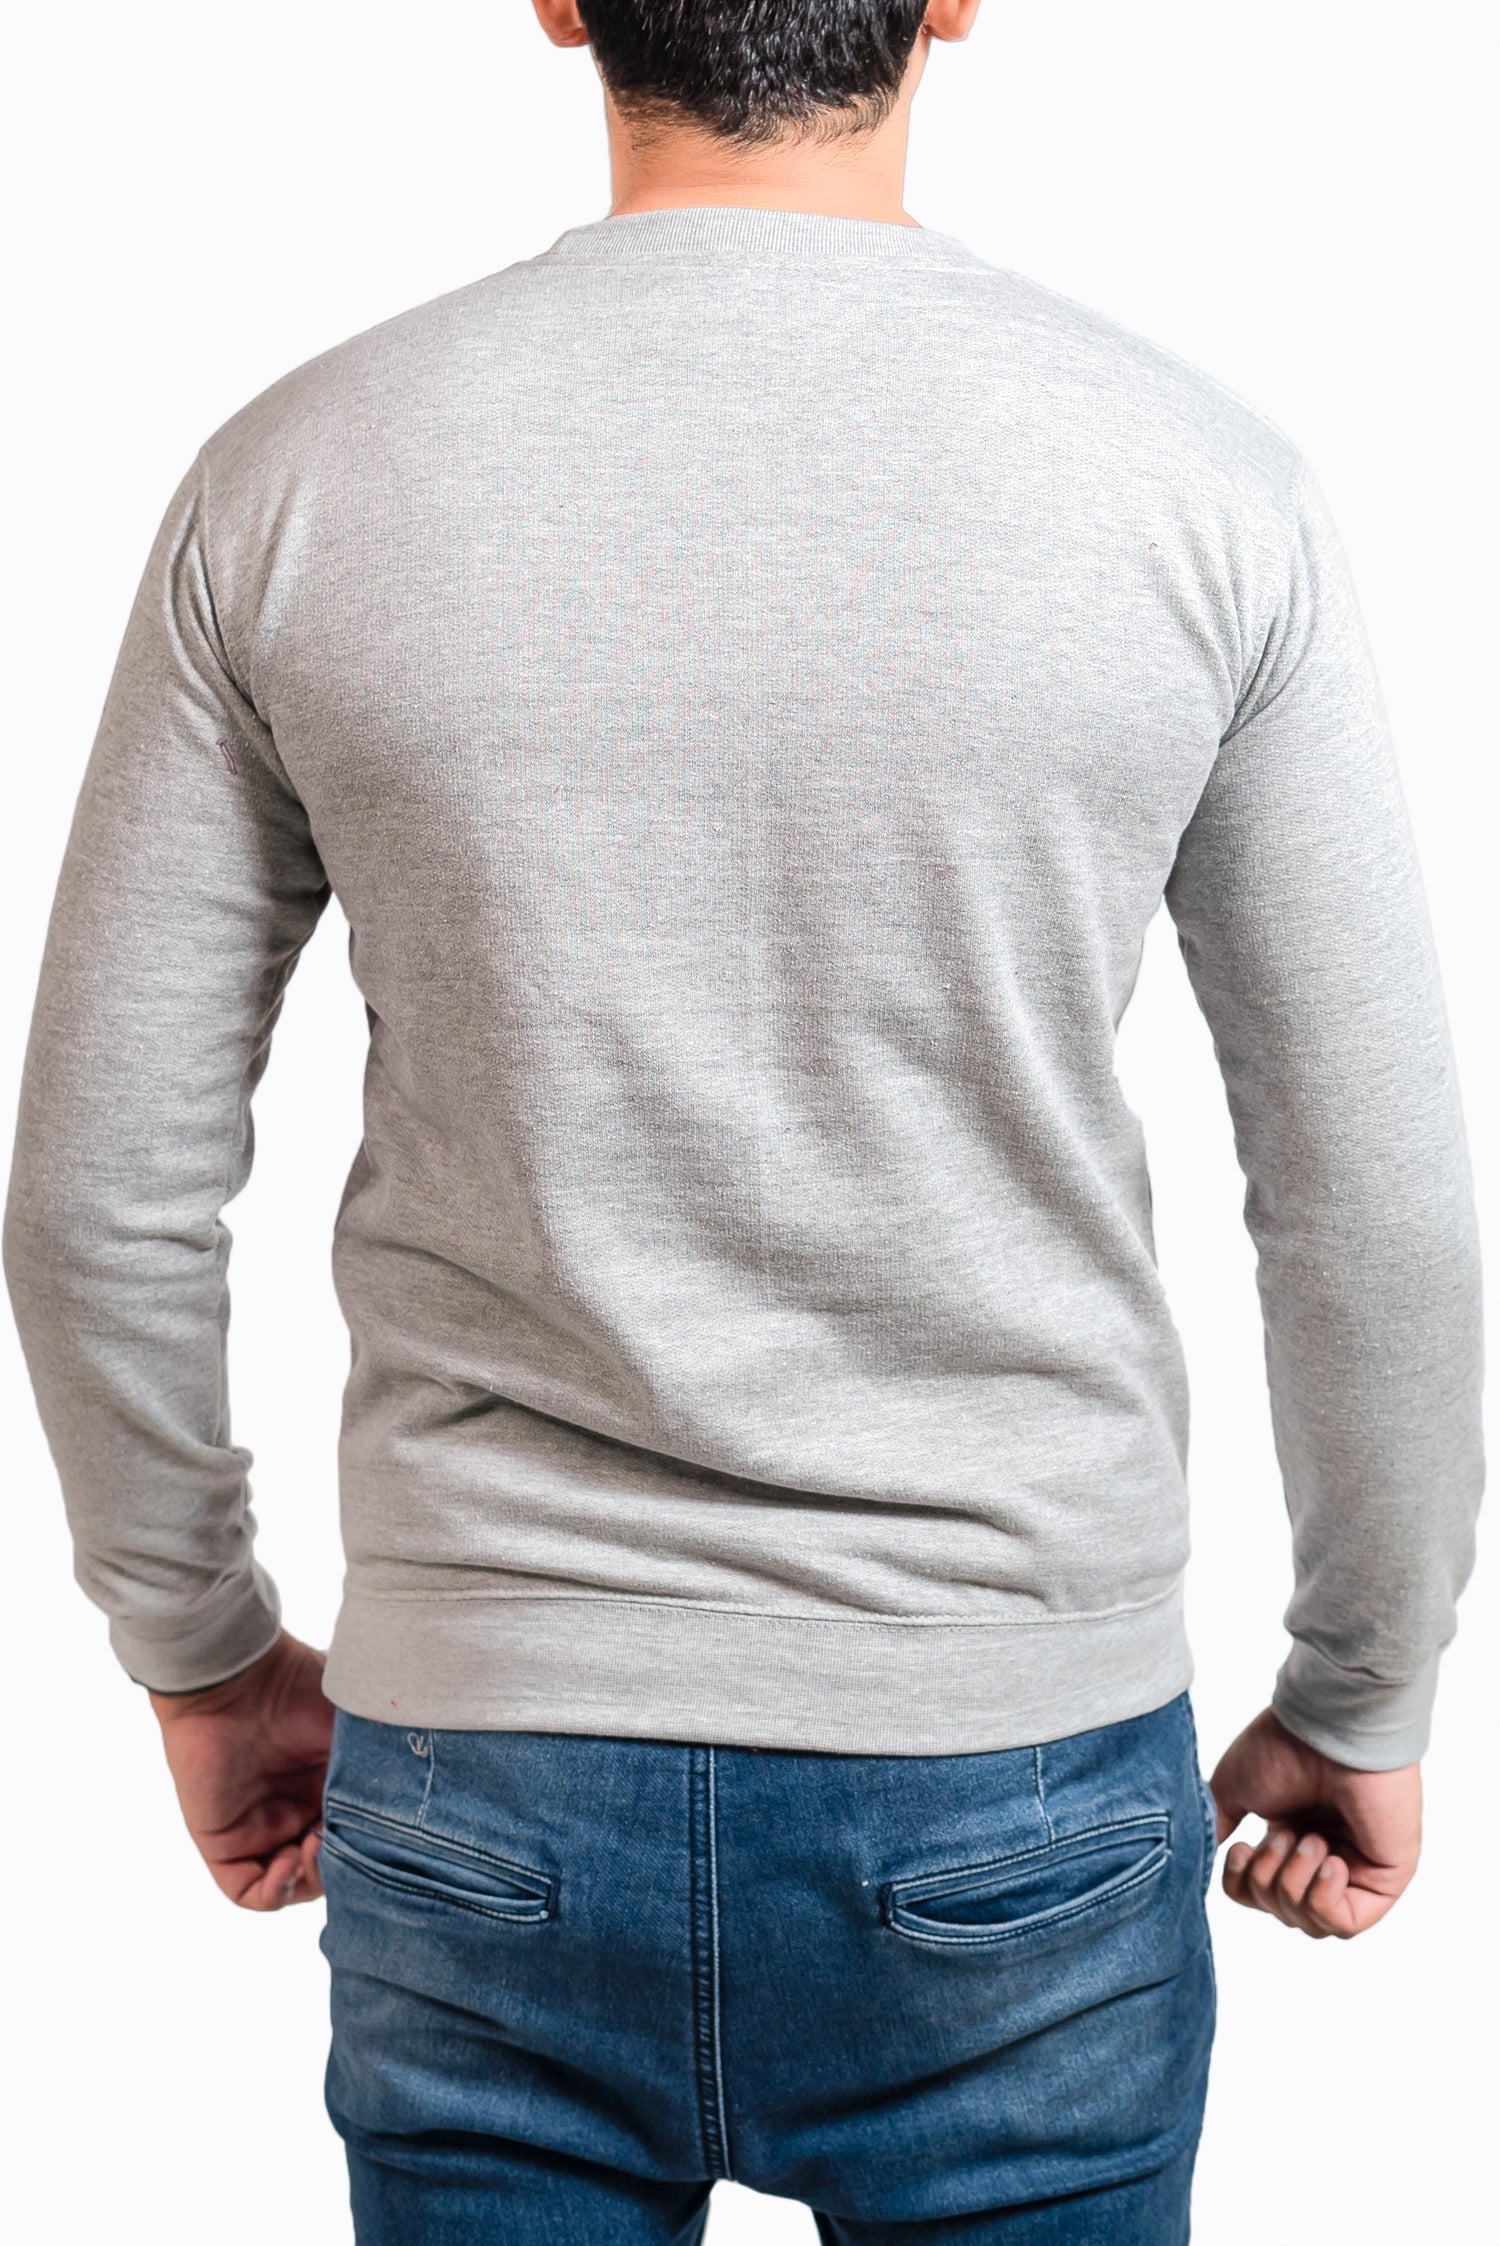 Basic Lt. Grey Sweatshirt // Men - teehoodie.co